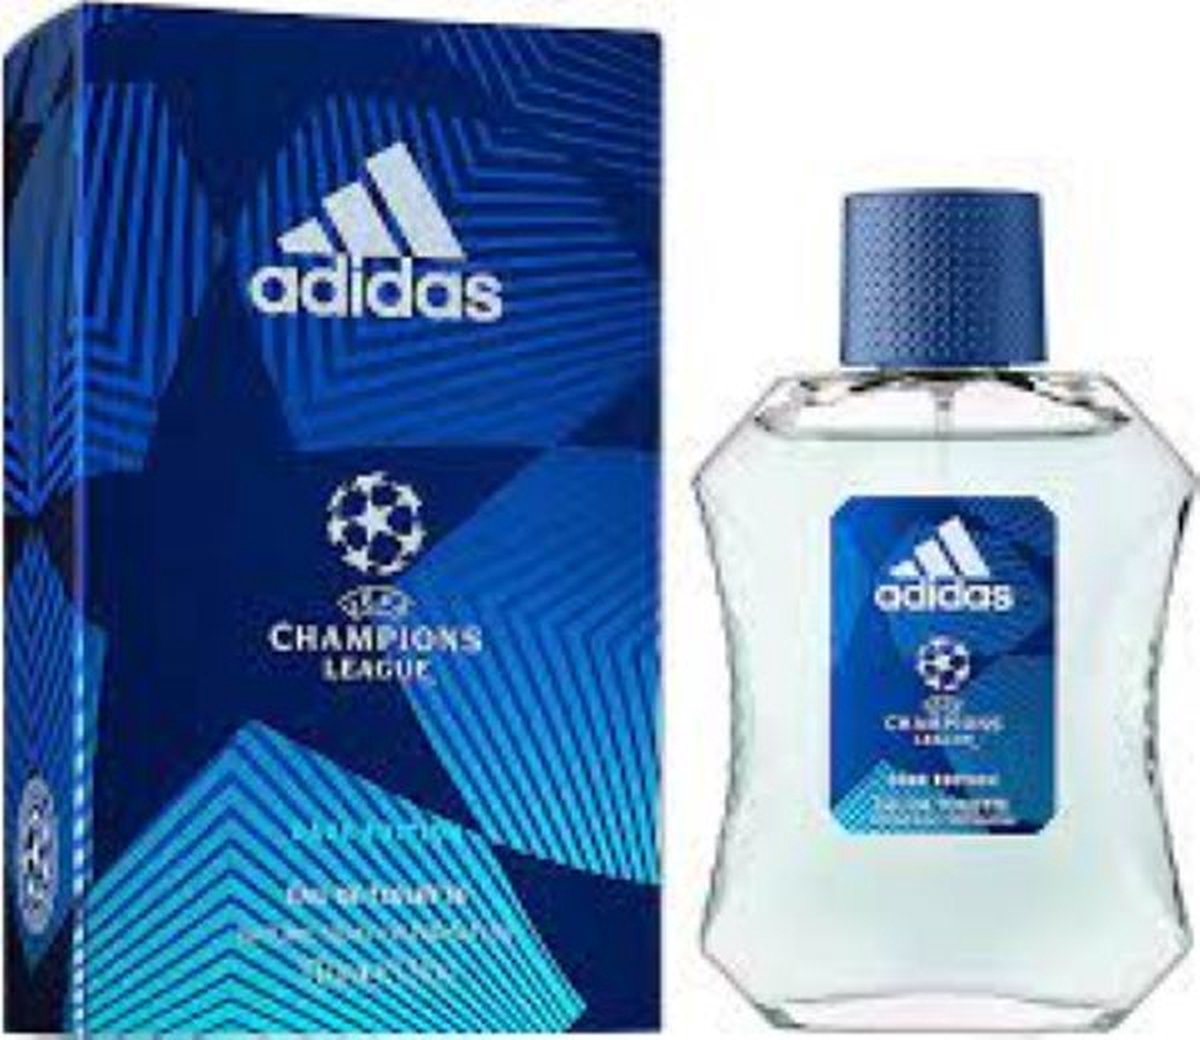 Adidas Eau de Toilette Men – Champions League Dare Edition - 3 x 100 ml